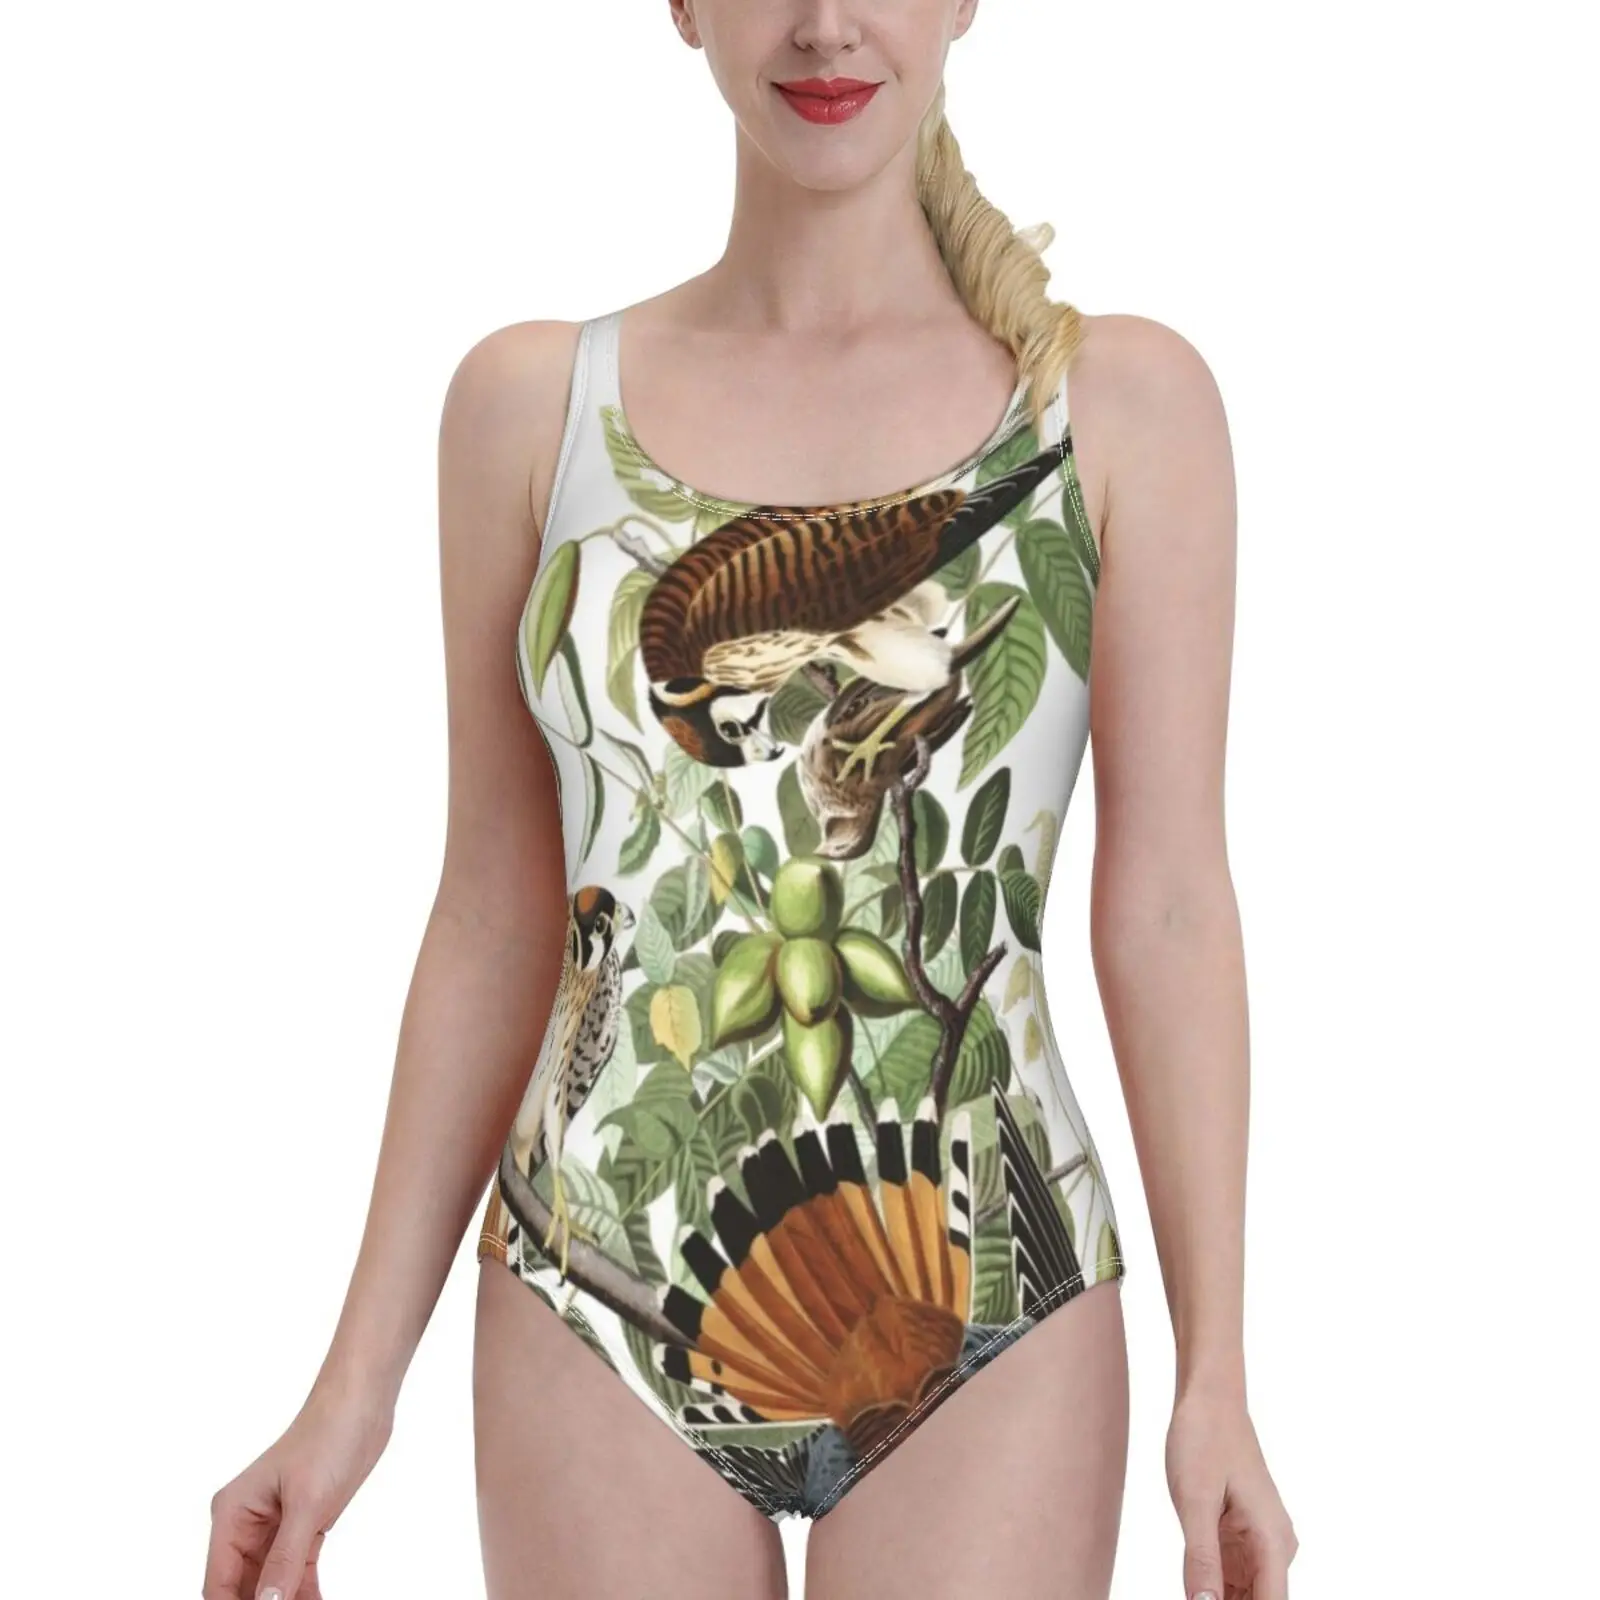 

Американский слитный купальник Kestrel-John James Audubon, женские сексуальные монокини, купальные костюмы, новые пляжные купальники для девушек, Джон ...